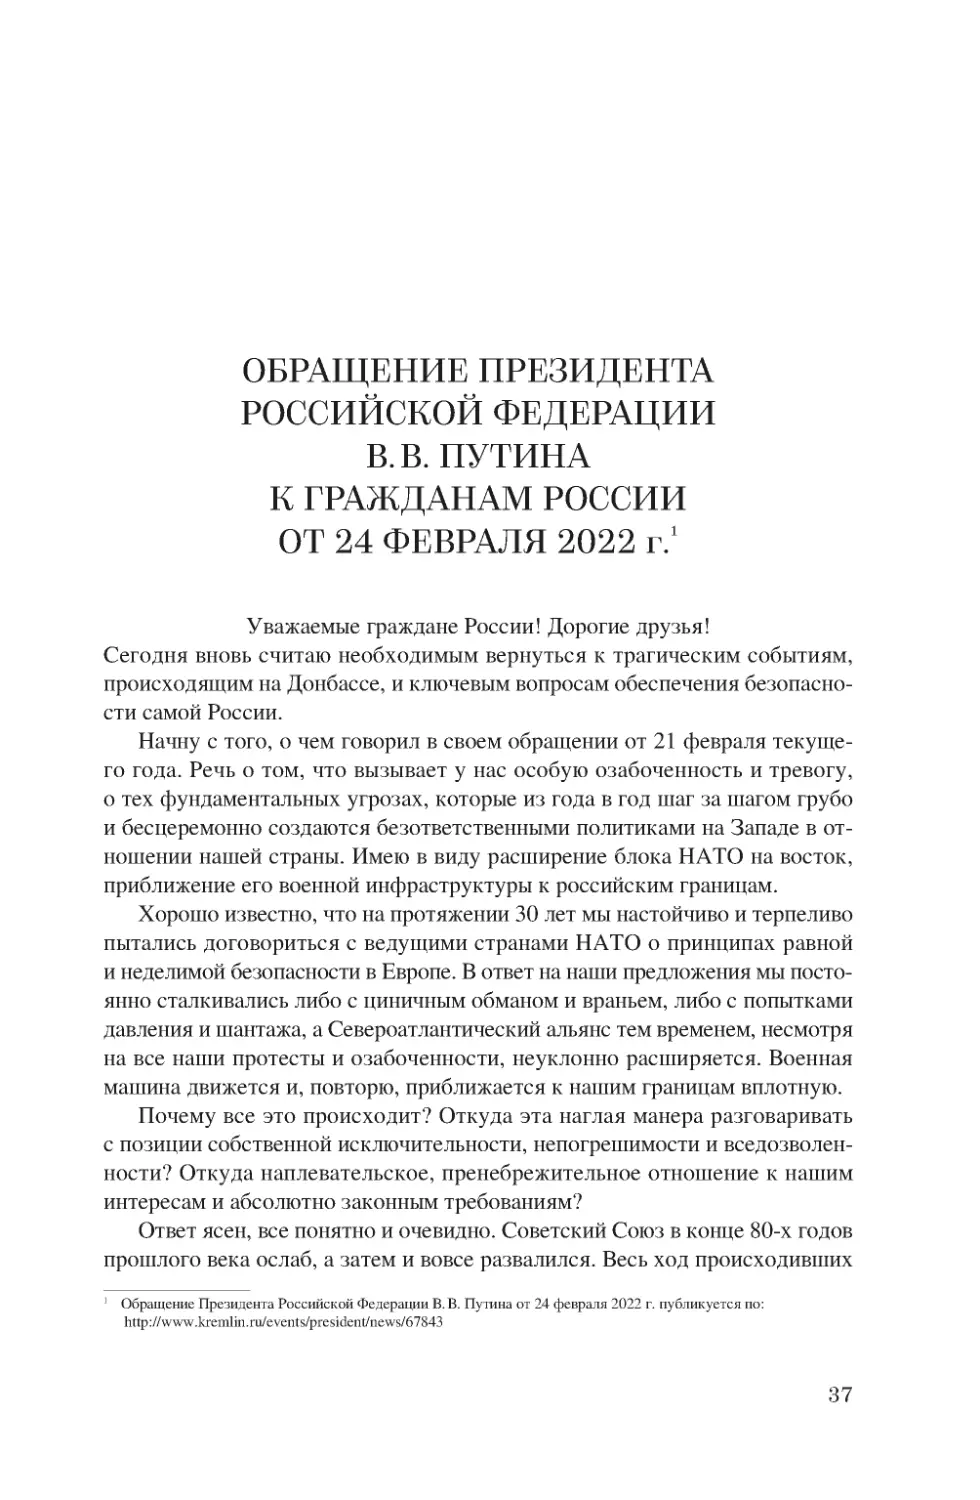 Обращение Президента Российской Федерации В.В. Путина к гражданам России от 24 февраля 2022 г